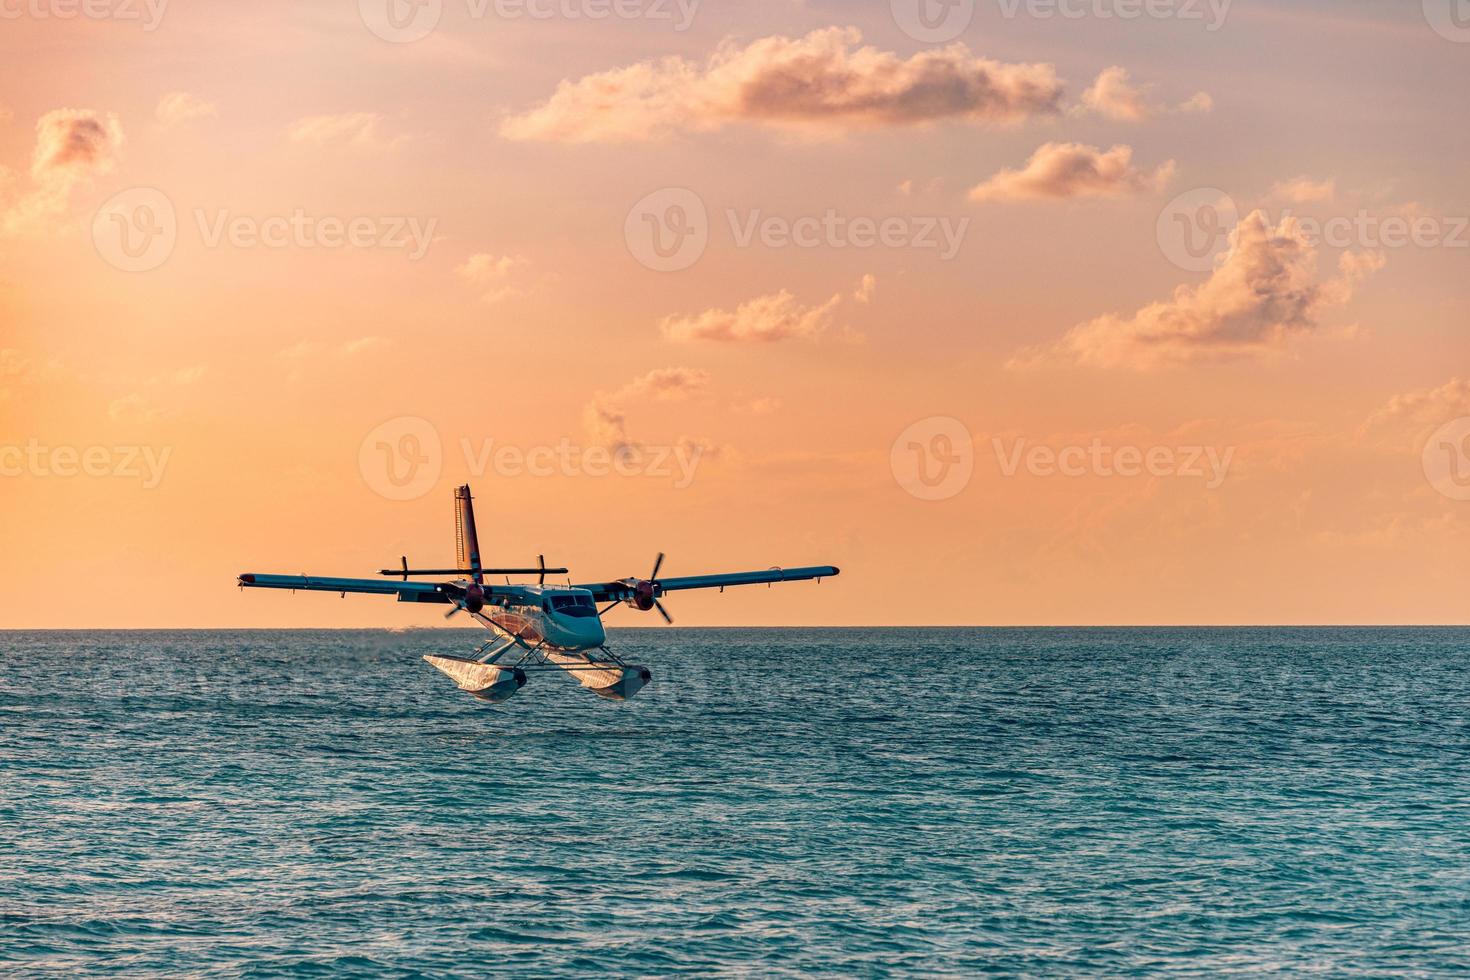 escena exótica con hidroavión en el desembarco marítimo de maldivas. hidroavión aterrizando en el mar al atardecer. vacaciones o vacaciones en el fondo del concepto de maldivas. transporte aéreo, hidroavión de aterrizaje en la costa del amanecer foto